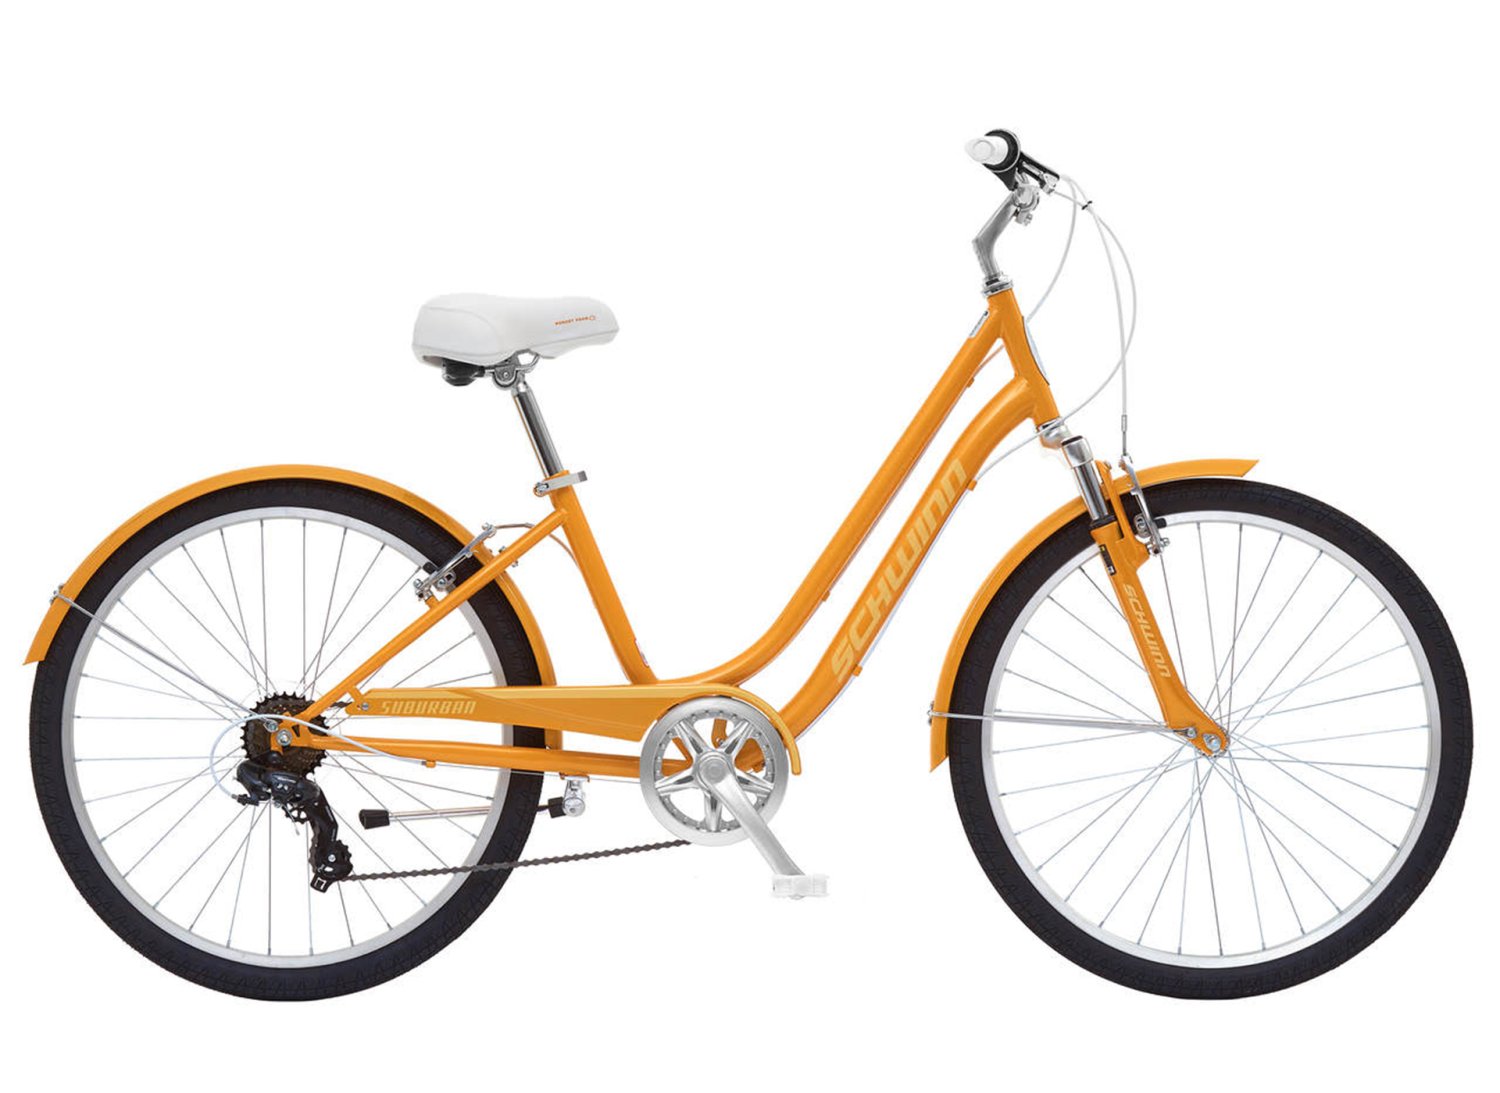 Велосипед женский Schwinn Suburban Women, 26'', 7 скоростей, оранжевый, S5483CINT женский велосипед haro lxi flow 2 st 27 5 год 2021 оранжевый ростовка 17